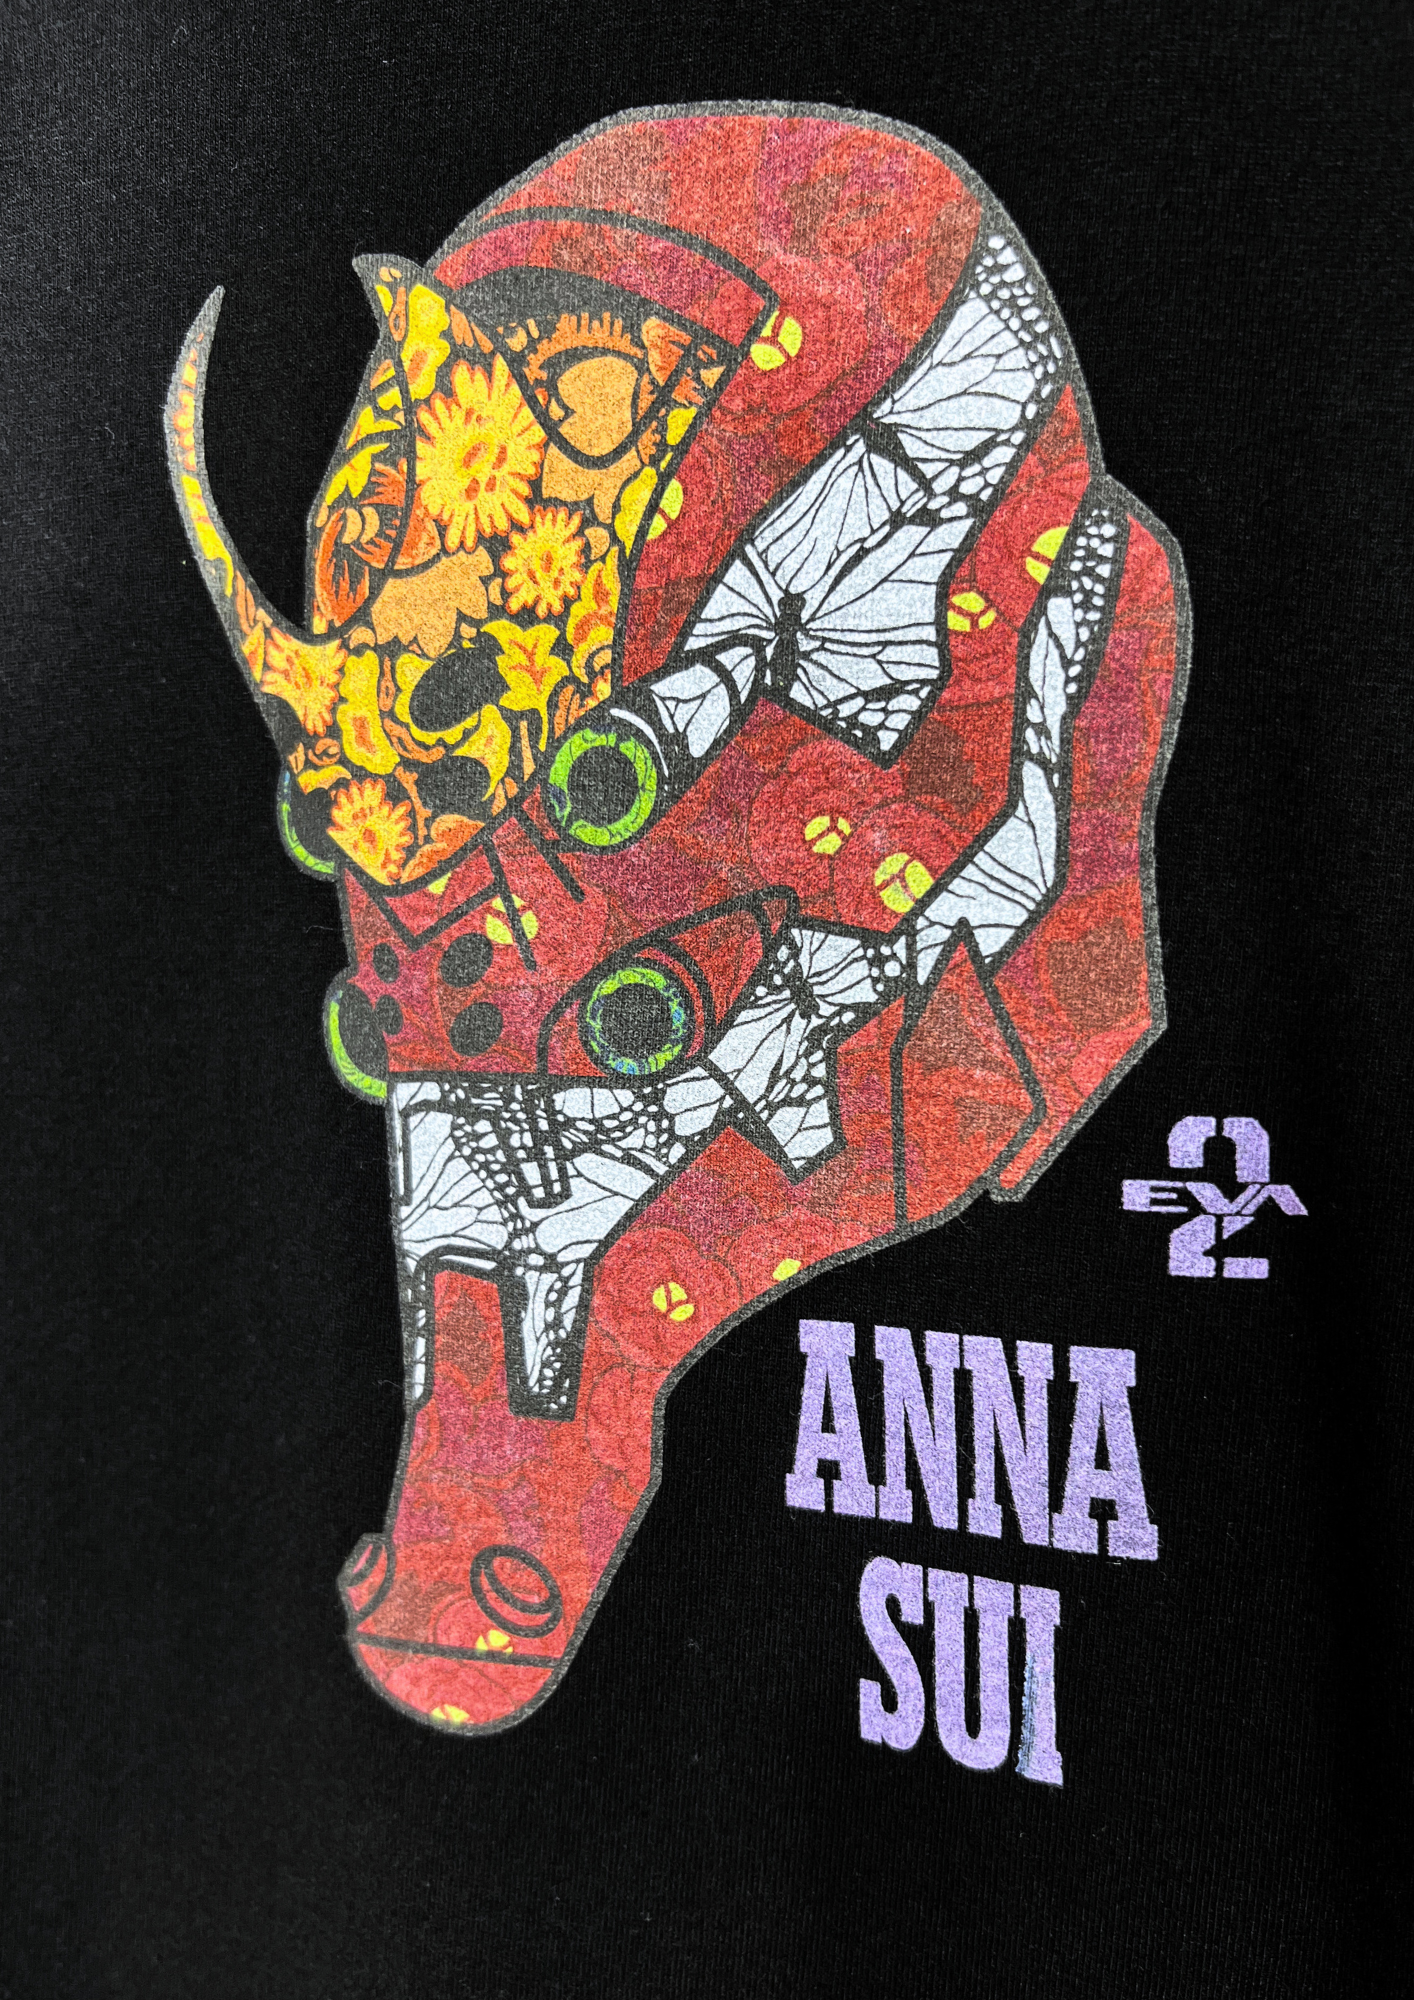 2021 Neon Genesis Evangelion x ANNA SUI EVA 02 T-shirt